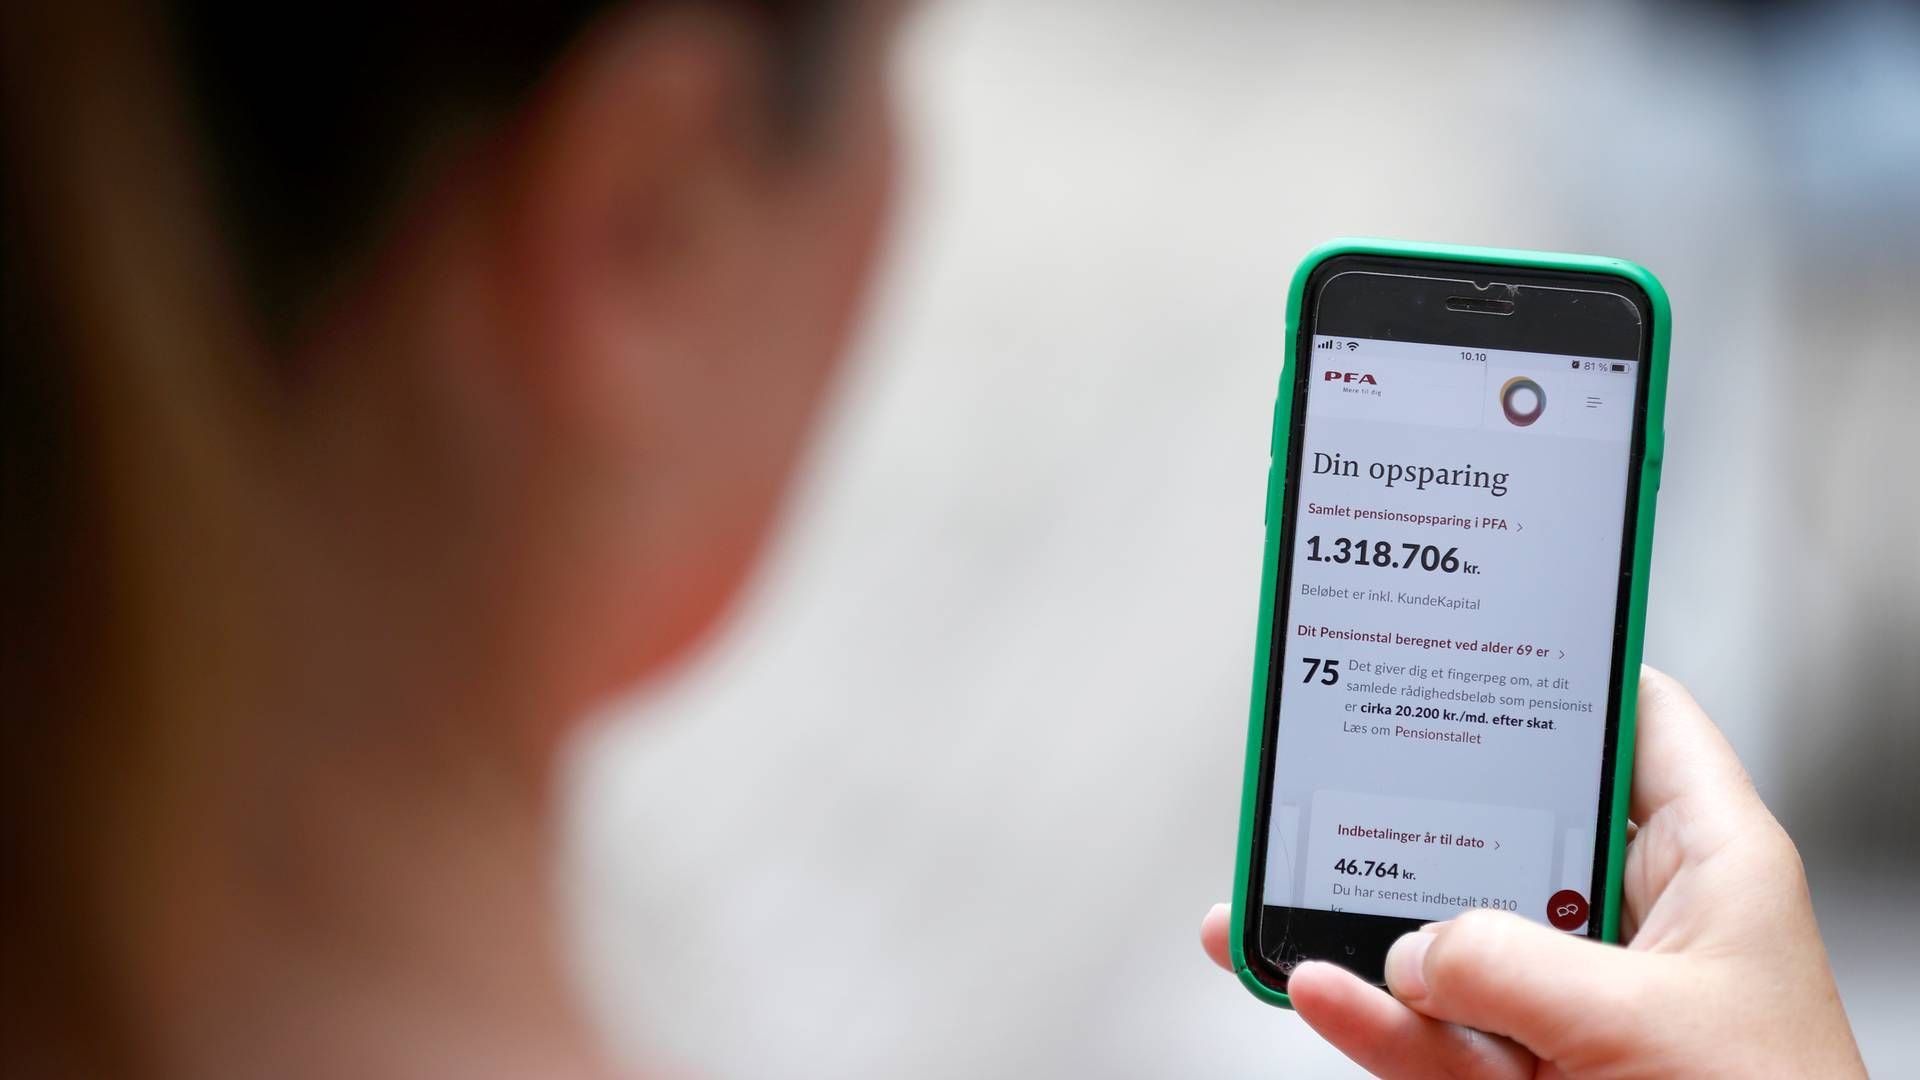 Arkivfoto. Danske Epay leverer digitale betalingsløsninger til online butikker. Selskabet er tilbage på danske hænder, efter en årrække med udenlandske ejere. Her er det en betaling via Mobilepay | Foto: Jens Dresling